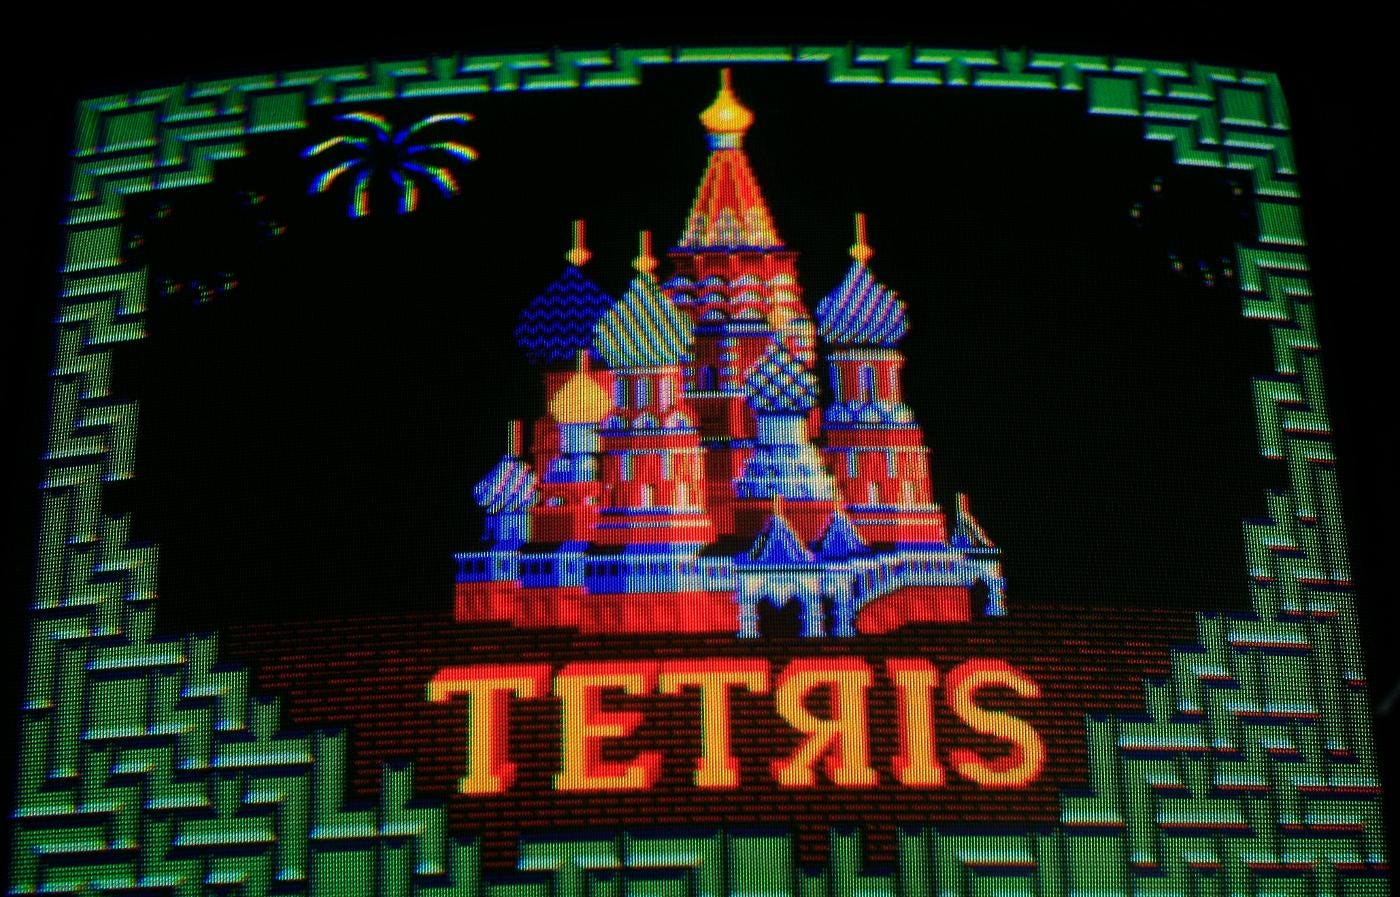 Dramat bakom Tetris – rad för rad